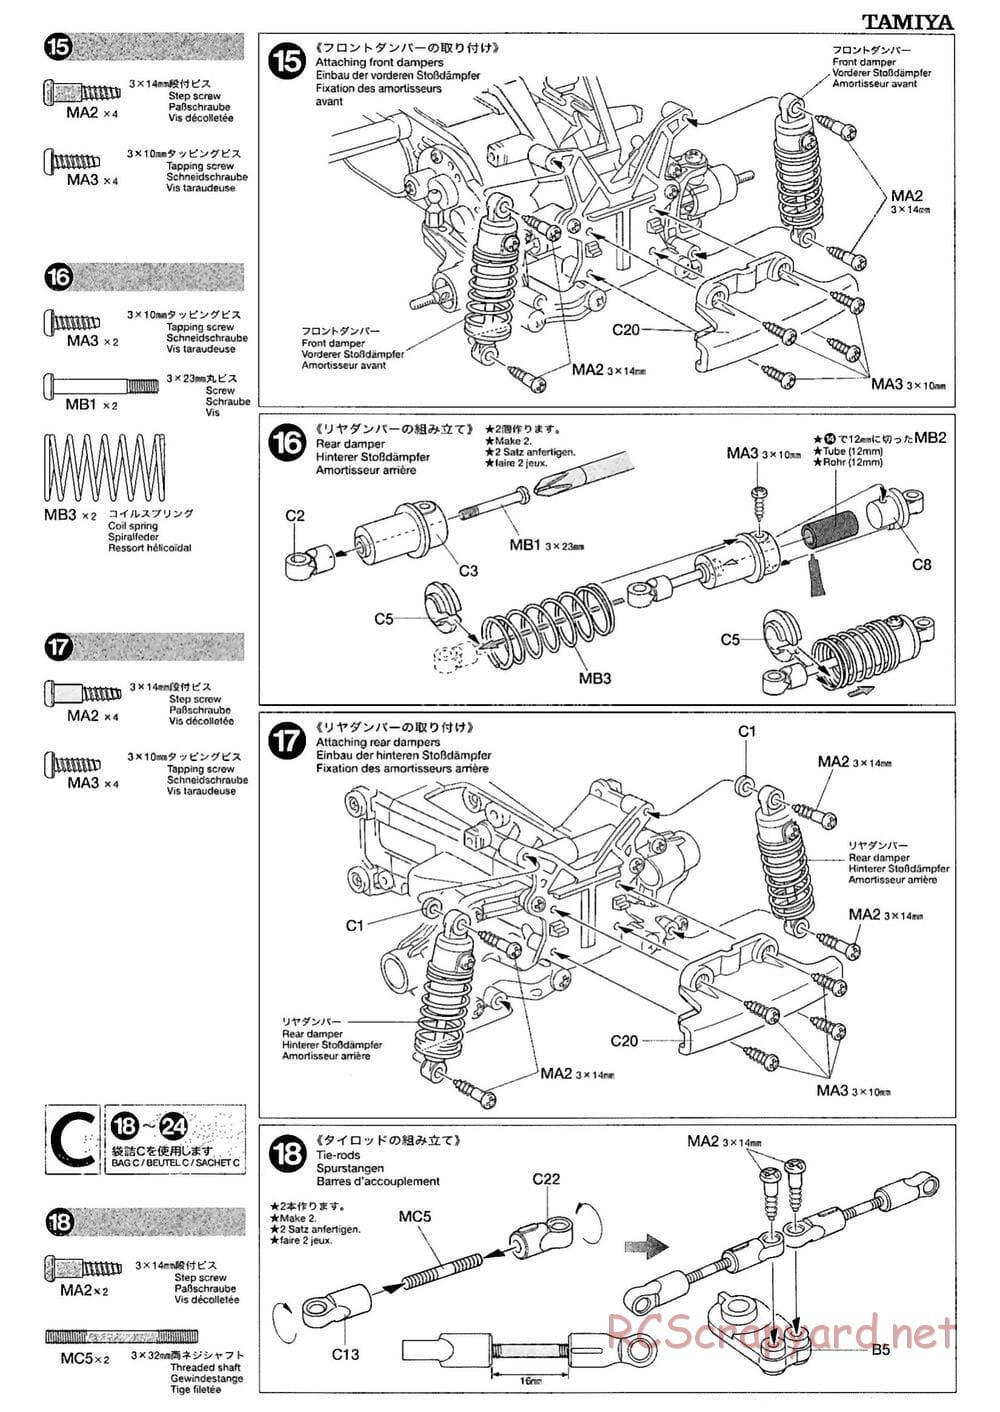 Tamiya - M-03M Chassis - Manual - Page 9